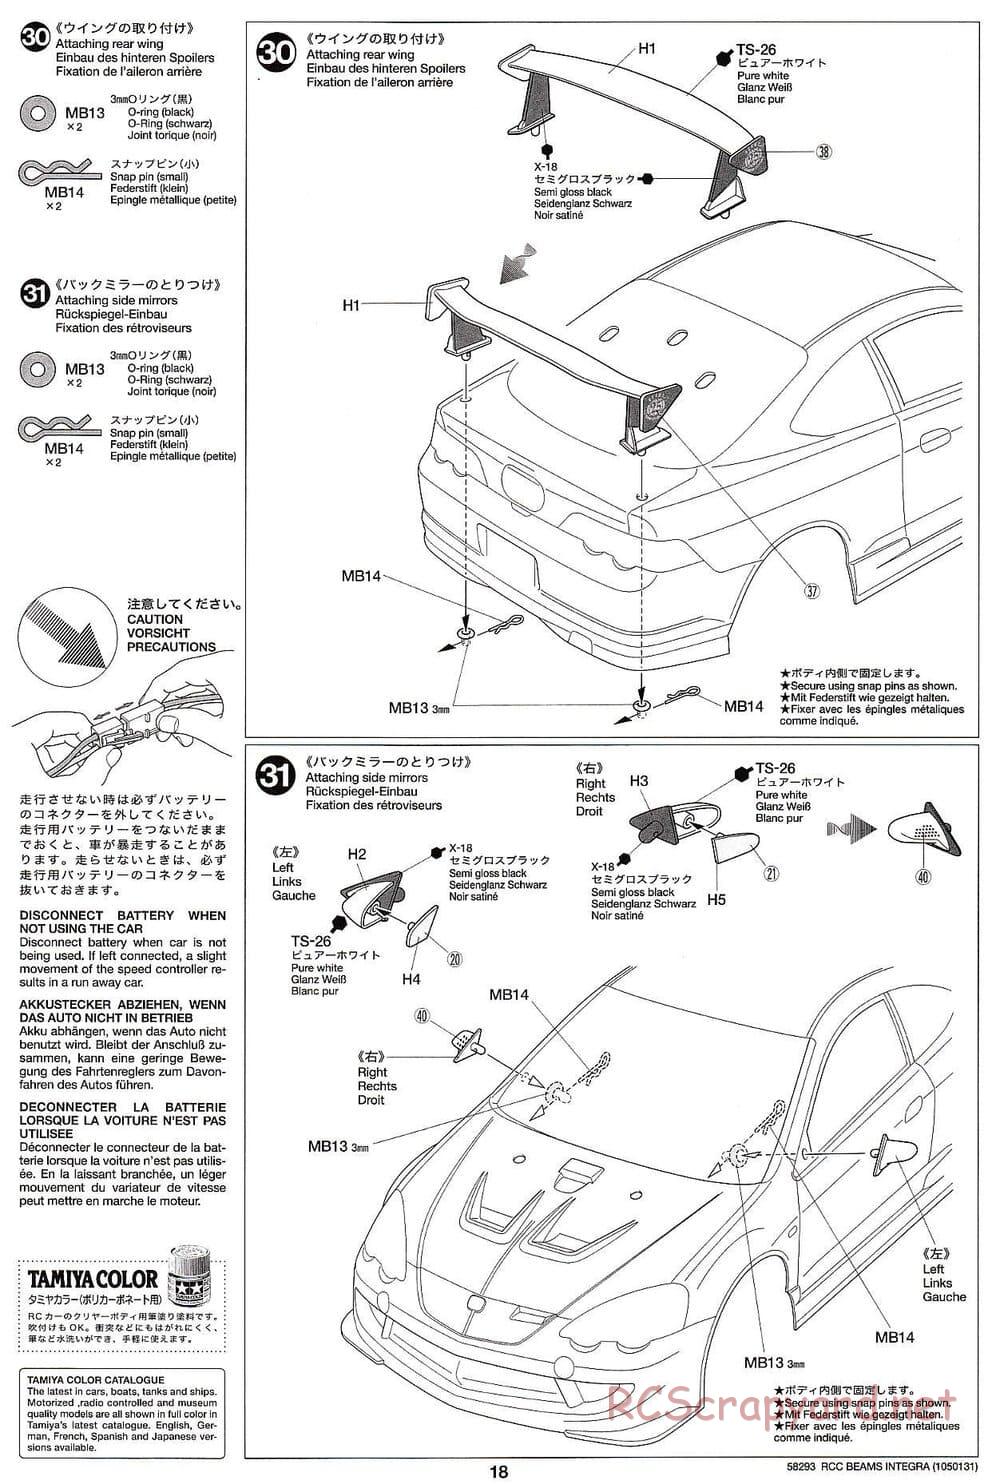 Tamiya - Beams Integra - TL-01 LA Chassis - Manual - Page 18